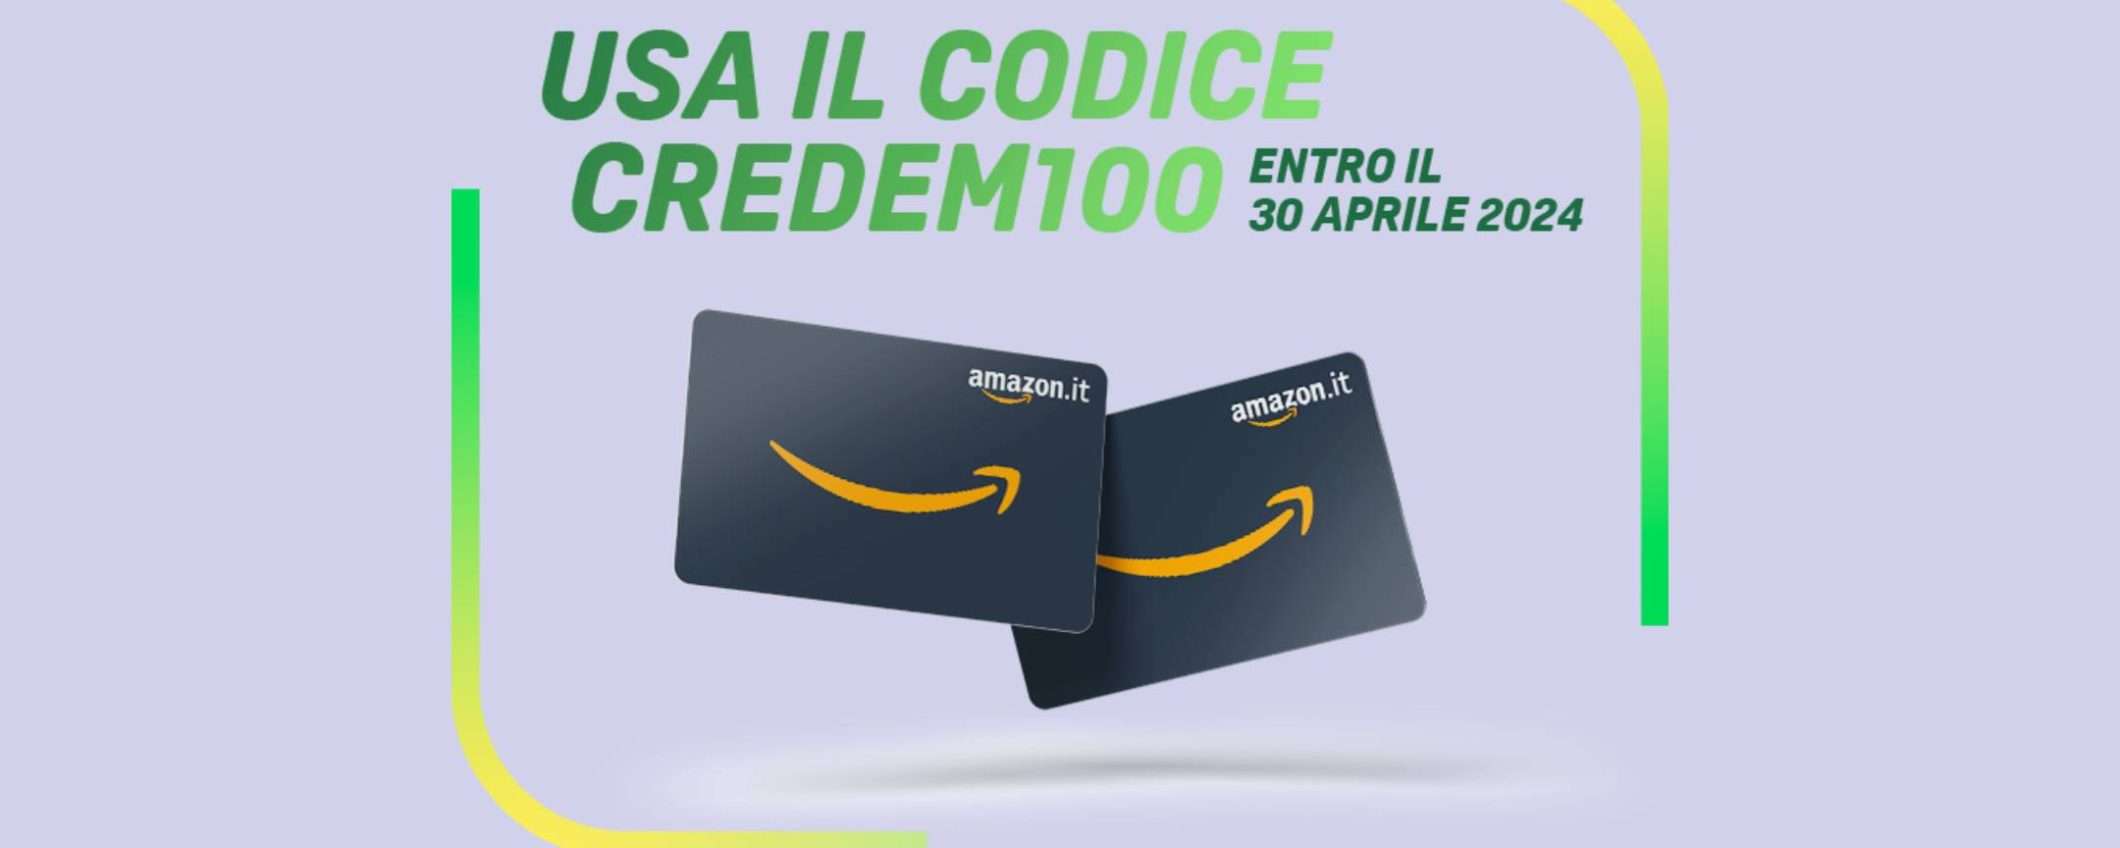 Credem Link: apri il conto entro il 30/04 per ottenere fino a 100€ in Buoni Amazon